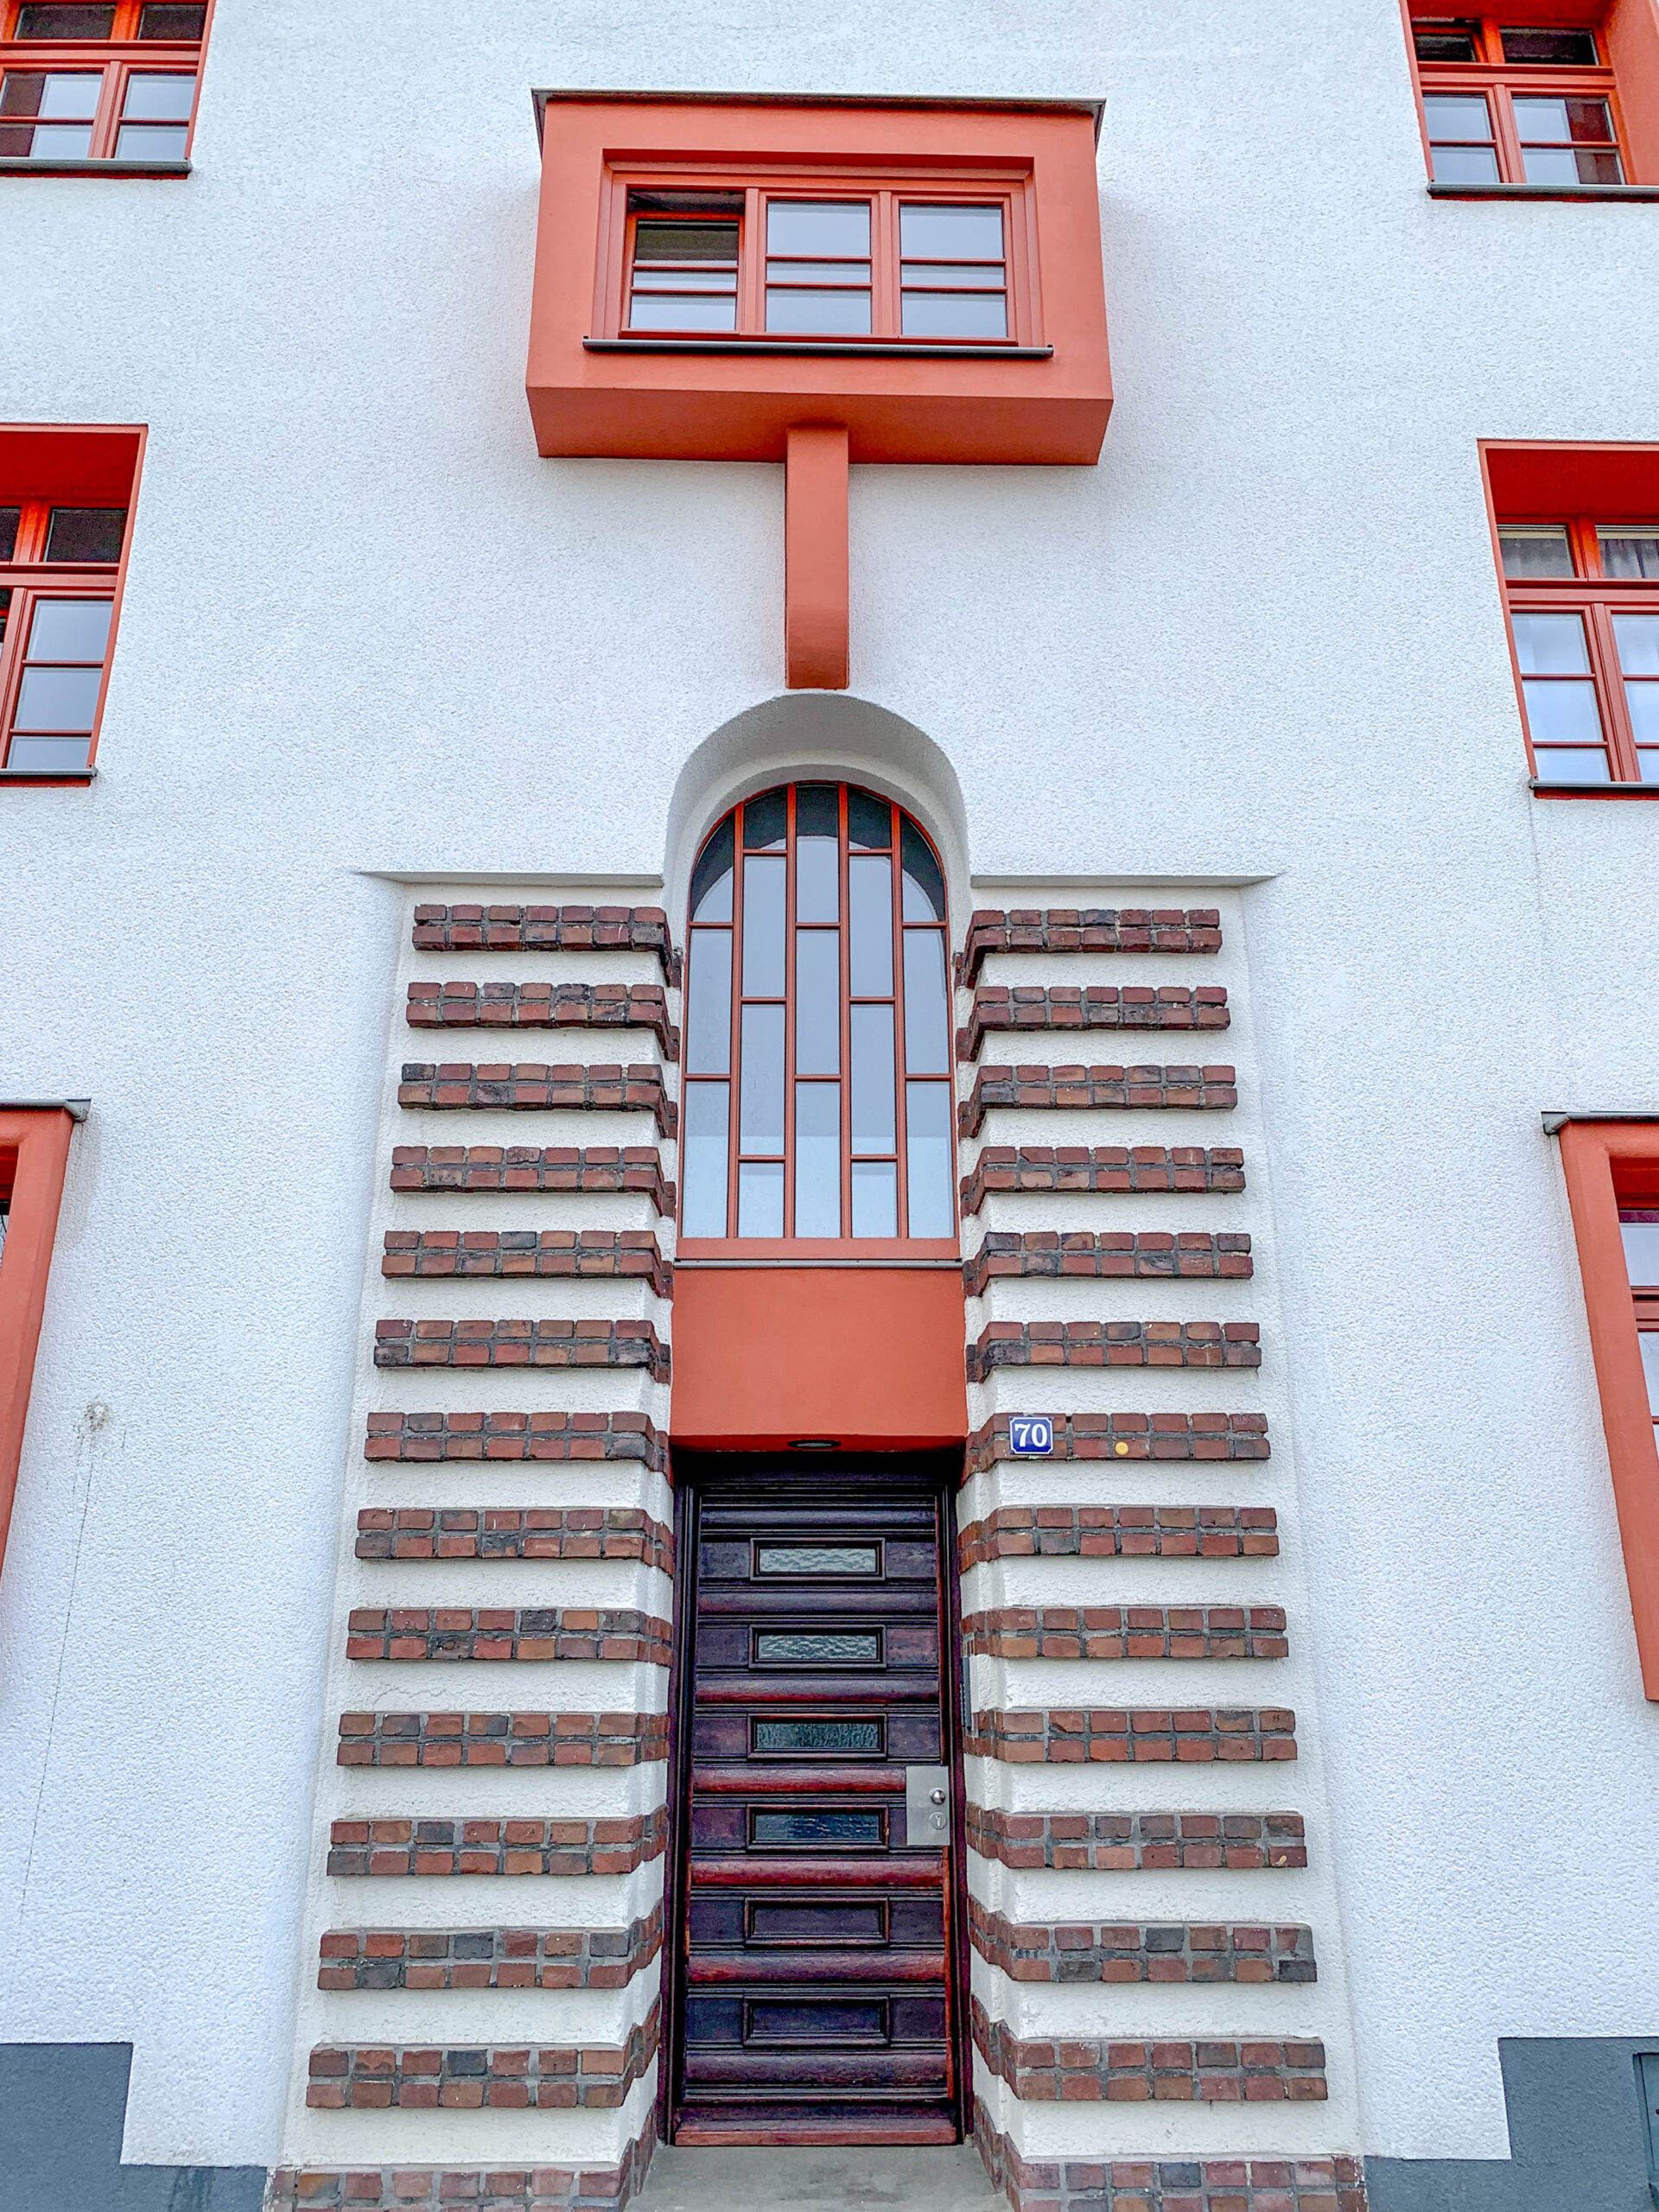 Naumann Housing Estate, 1927-1929. Architects: Manfred Faber, Otto Scheib, Fritz Fuß, Hans Heinz Lüttgen. Photo: Daniela Christmann